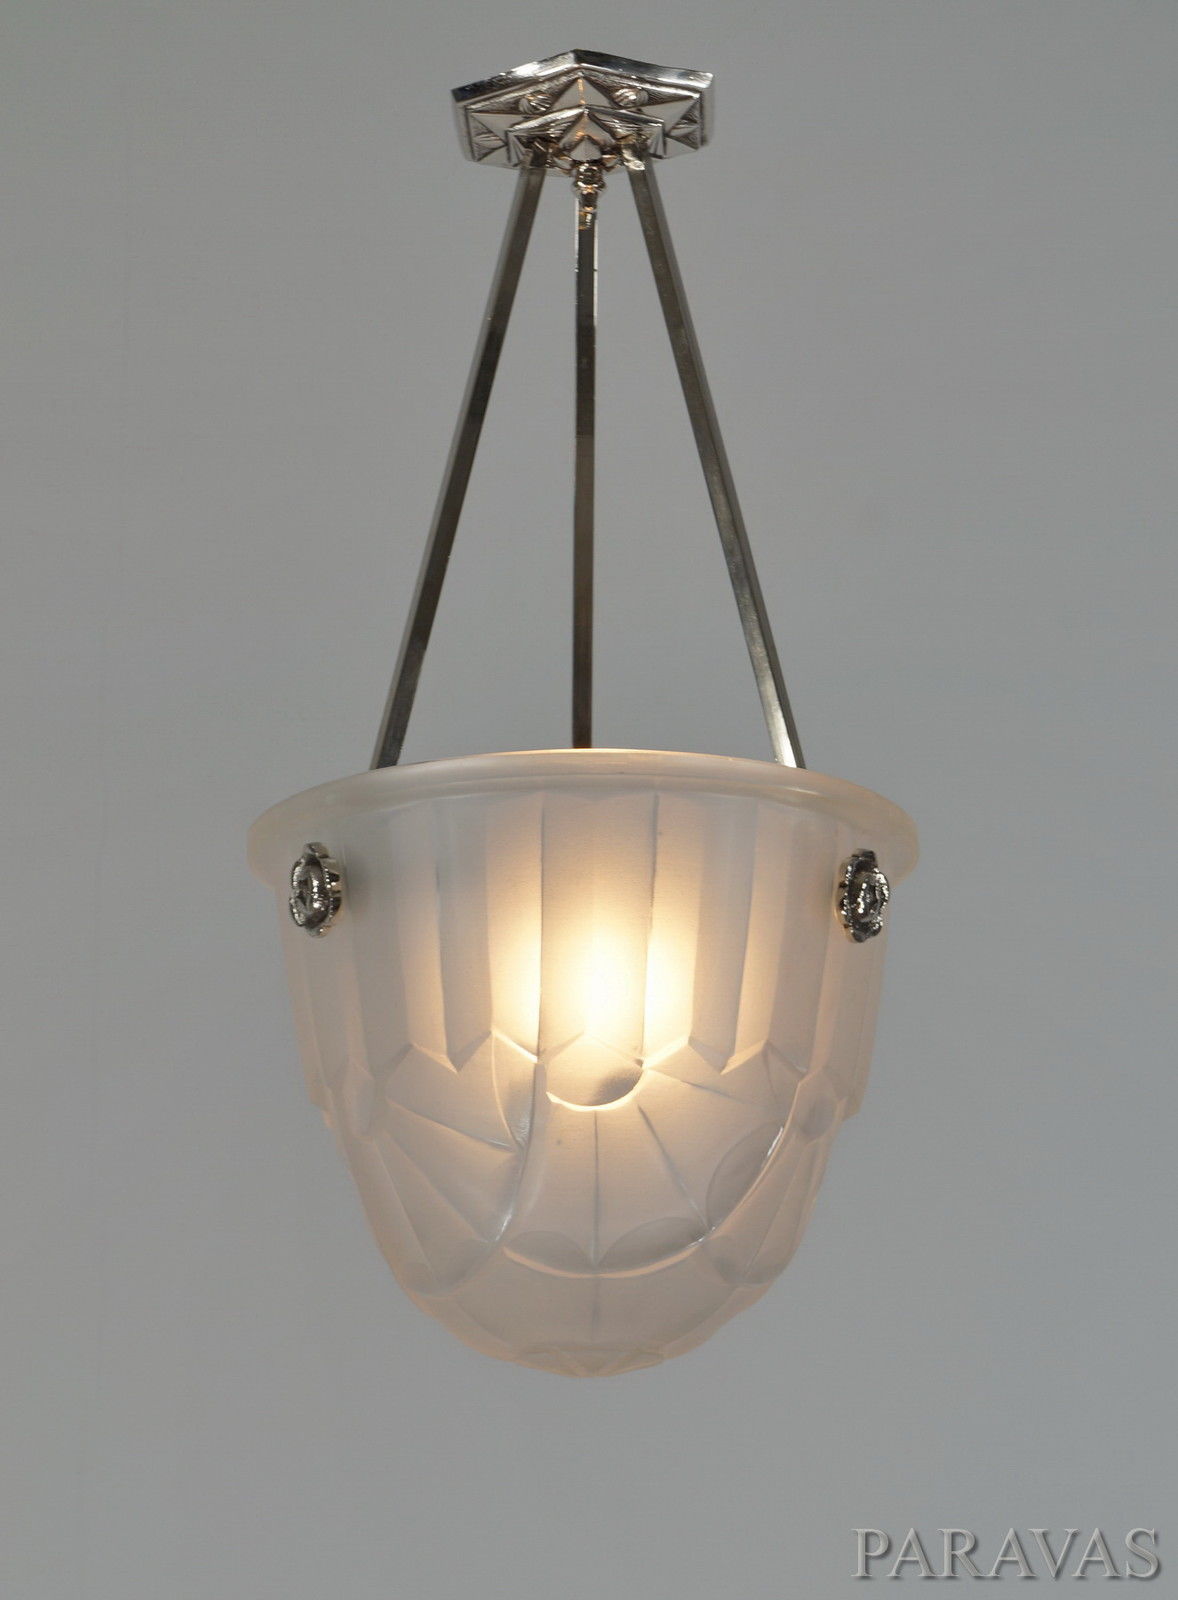 アンティークアールデコデザイン2灯吊り下げランプ[almt-84]アールデコデコレーションペンダント照明アンティークアメリカーナデコ